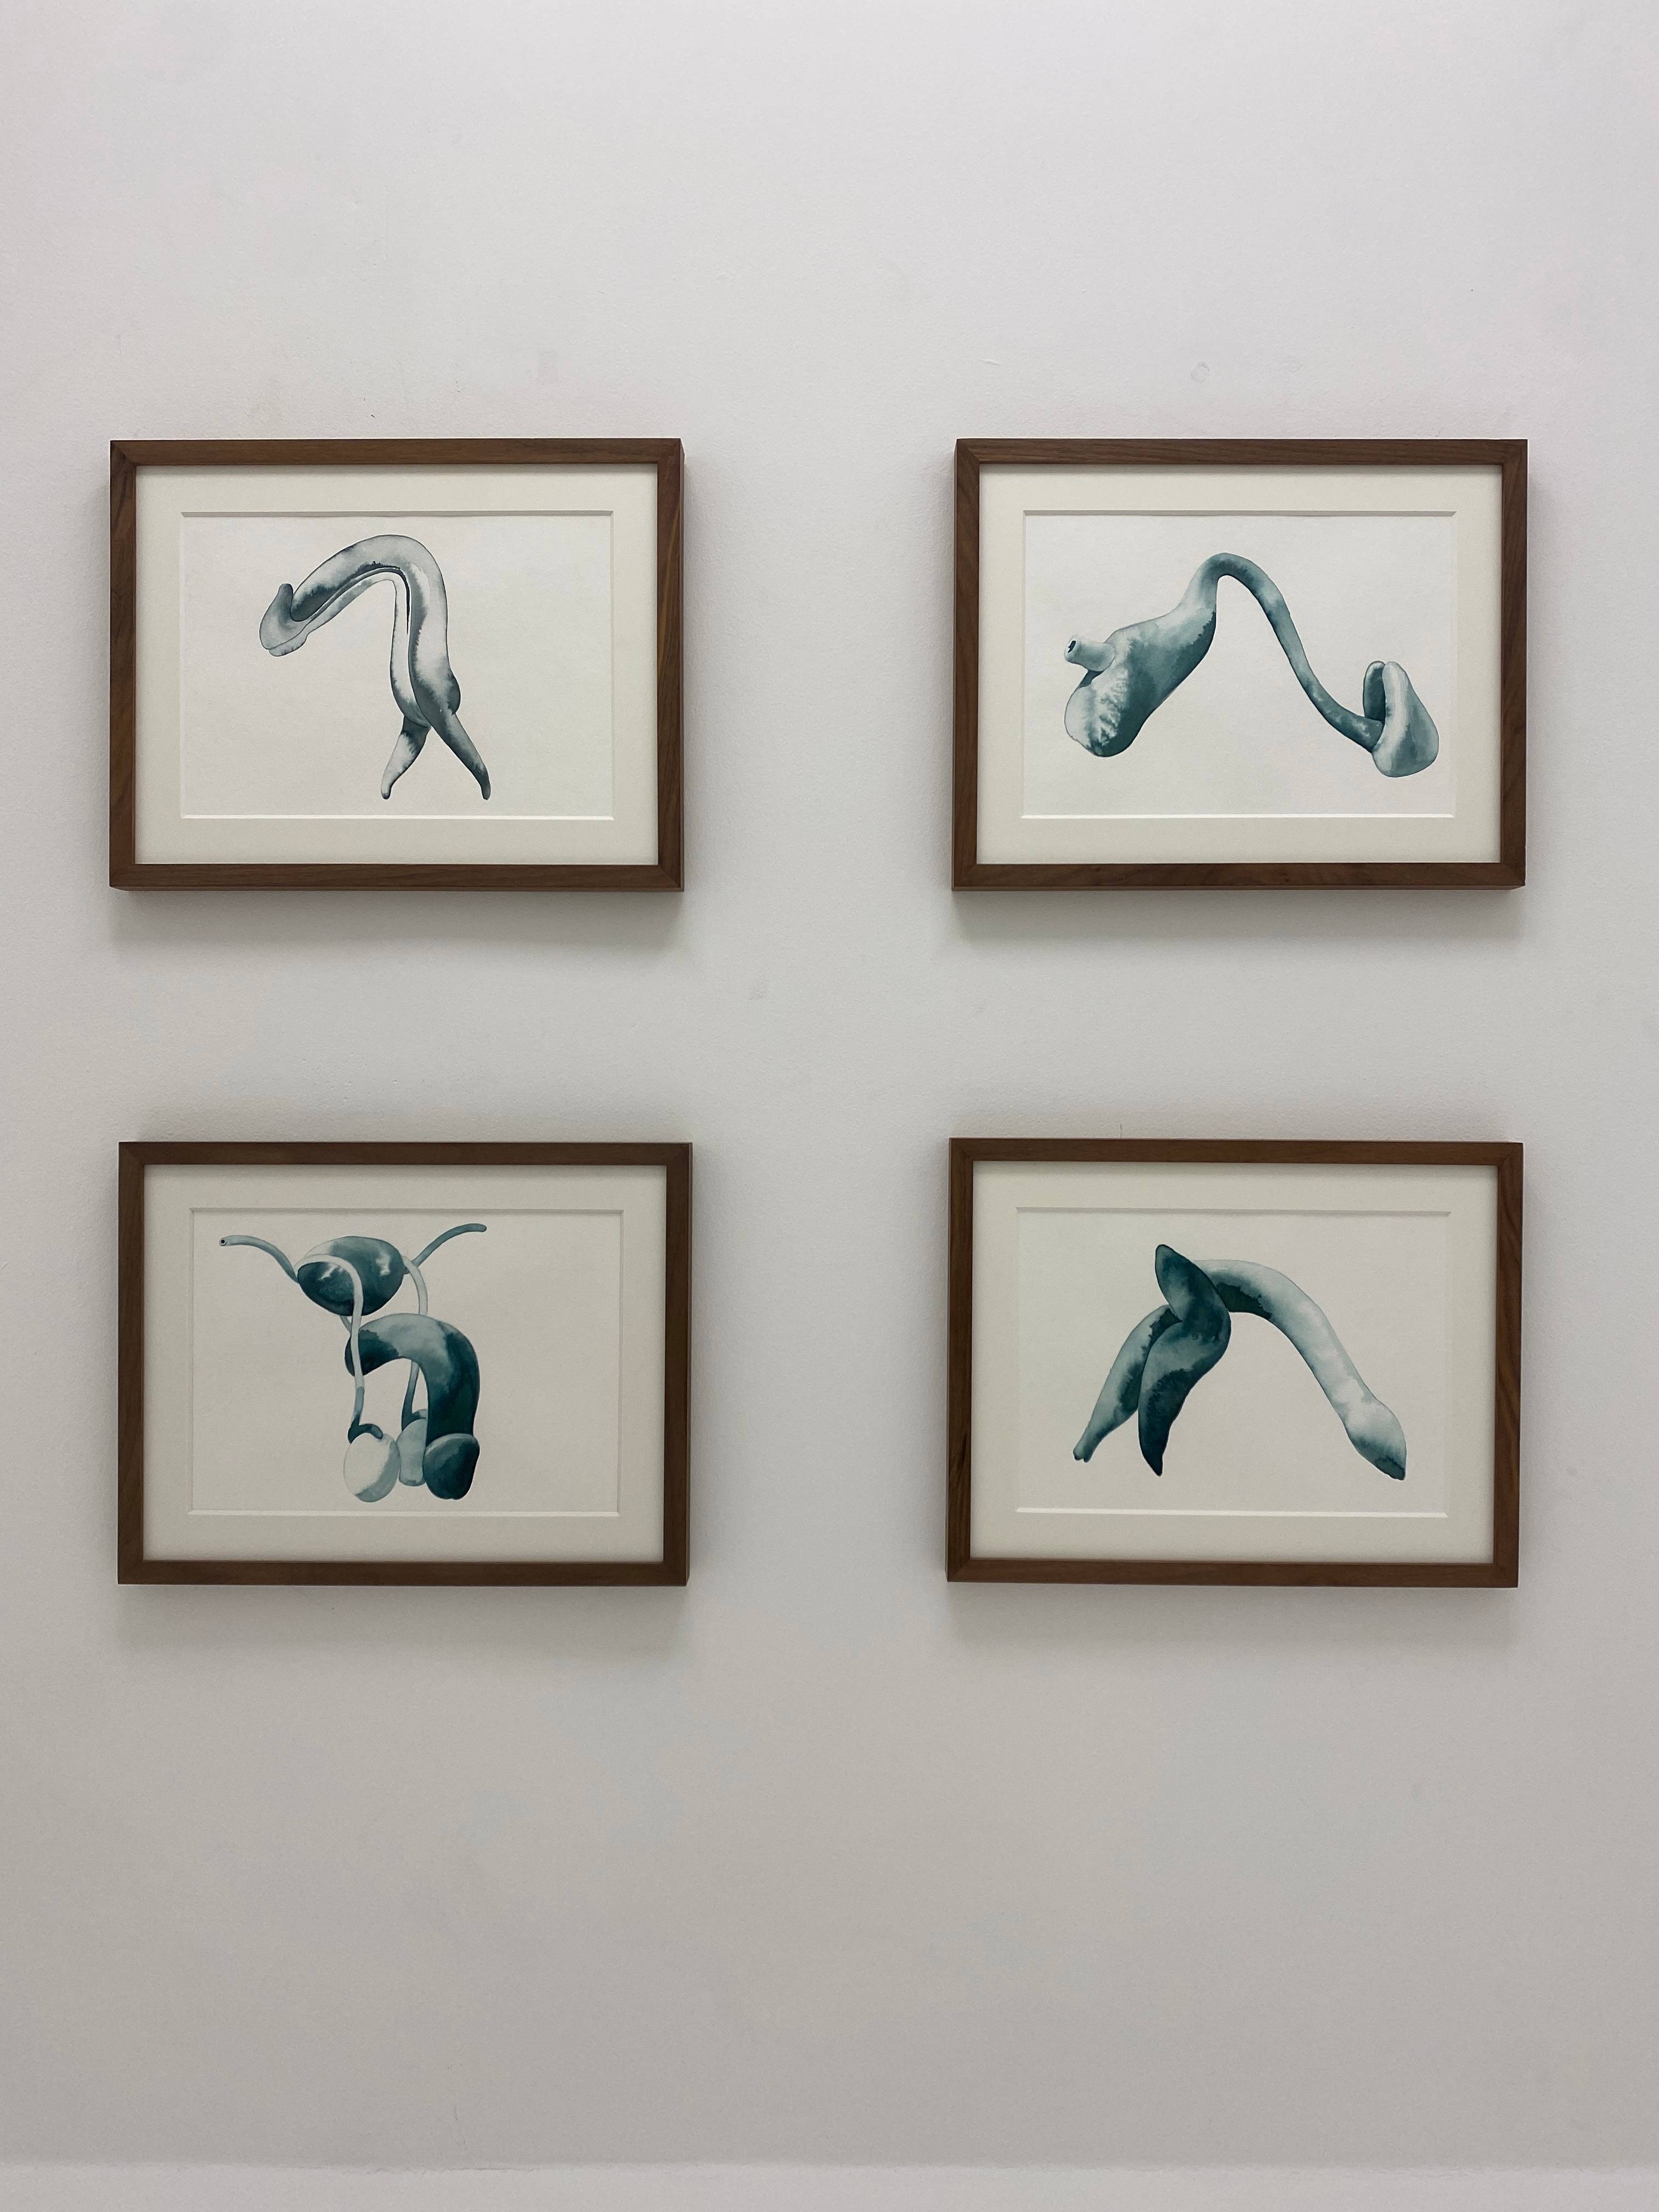 Détail de Attis #1, 2018
Aquarelle sur papier encadrée
30 x 38,5 cm
Courtesy Galerie Poggi, Paris